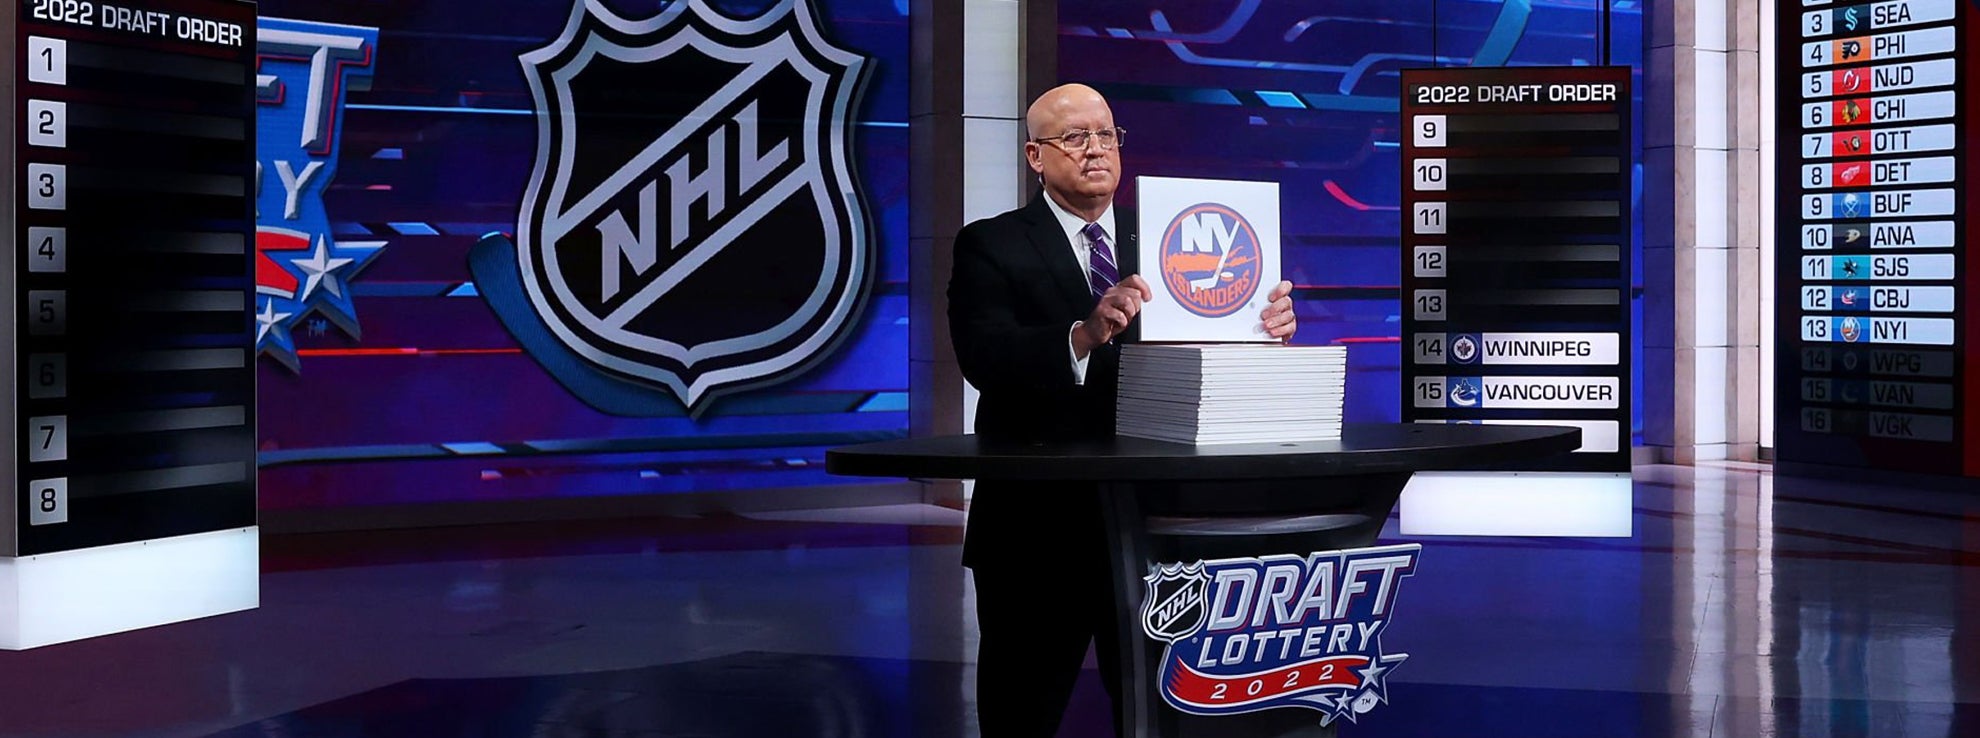 New York Islanders Get 13th Pick in NHL Draft